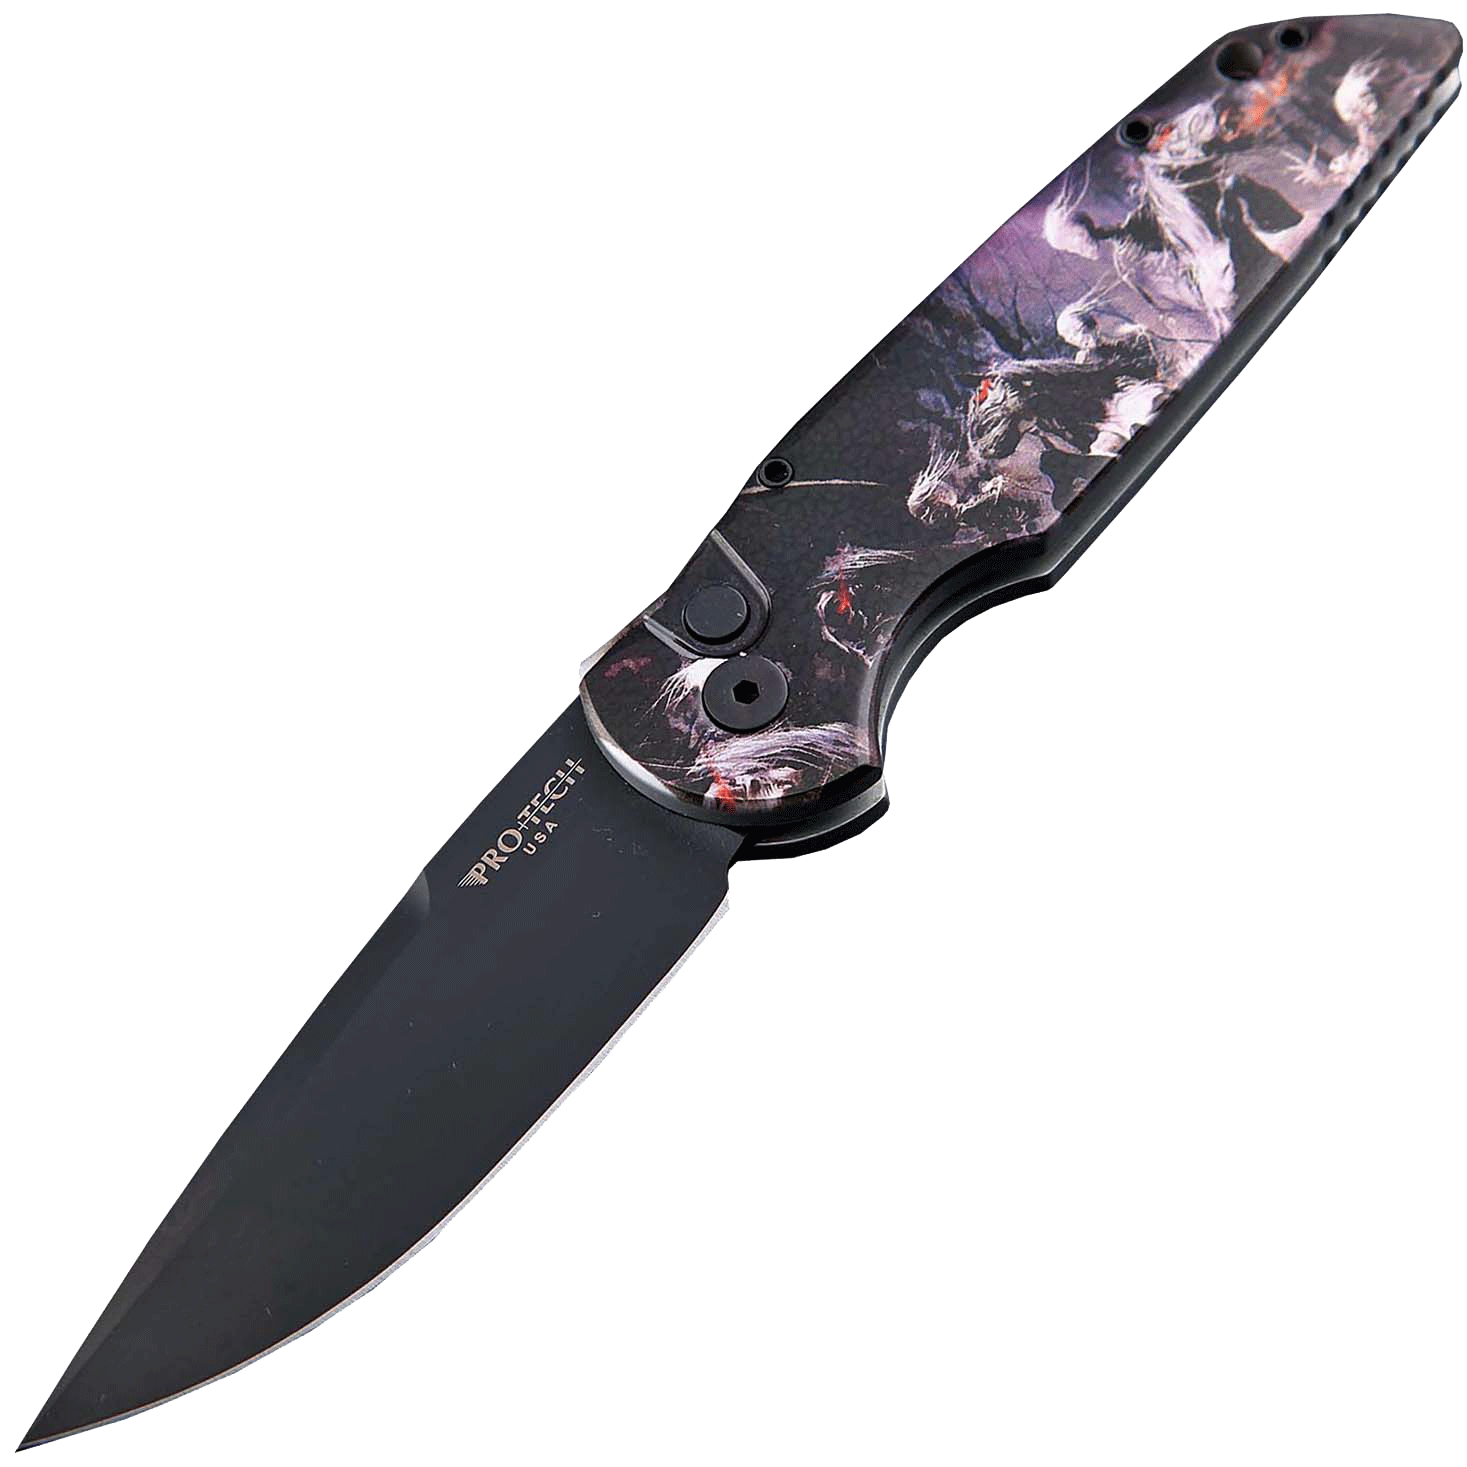 Автоматический складной нож Pro-Tech TR-3 Limited, клинок черный, сталь 154CM, рукоять алюминий, рисунок скелеты всадников - фото 1